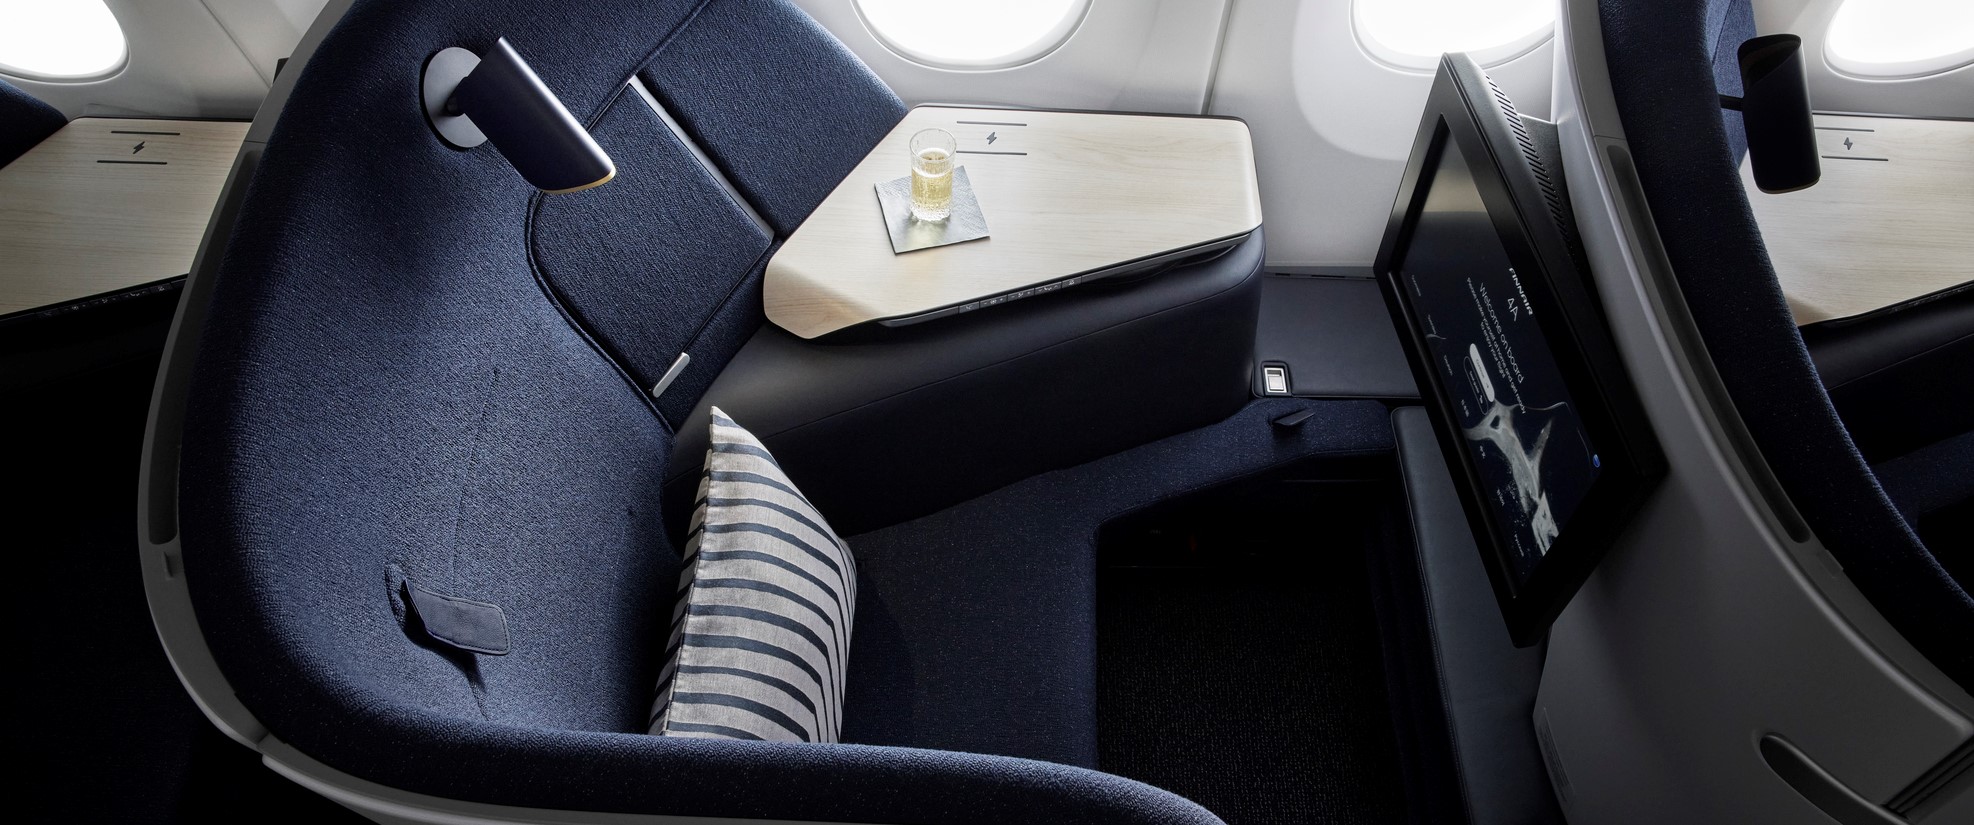 Finnair Air Lounge seat